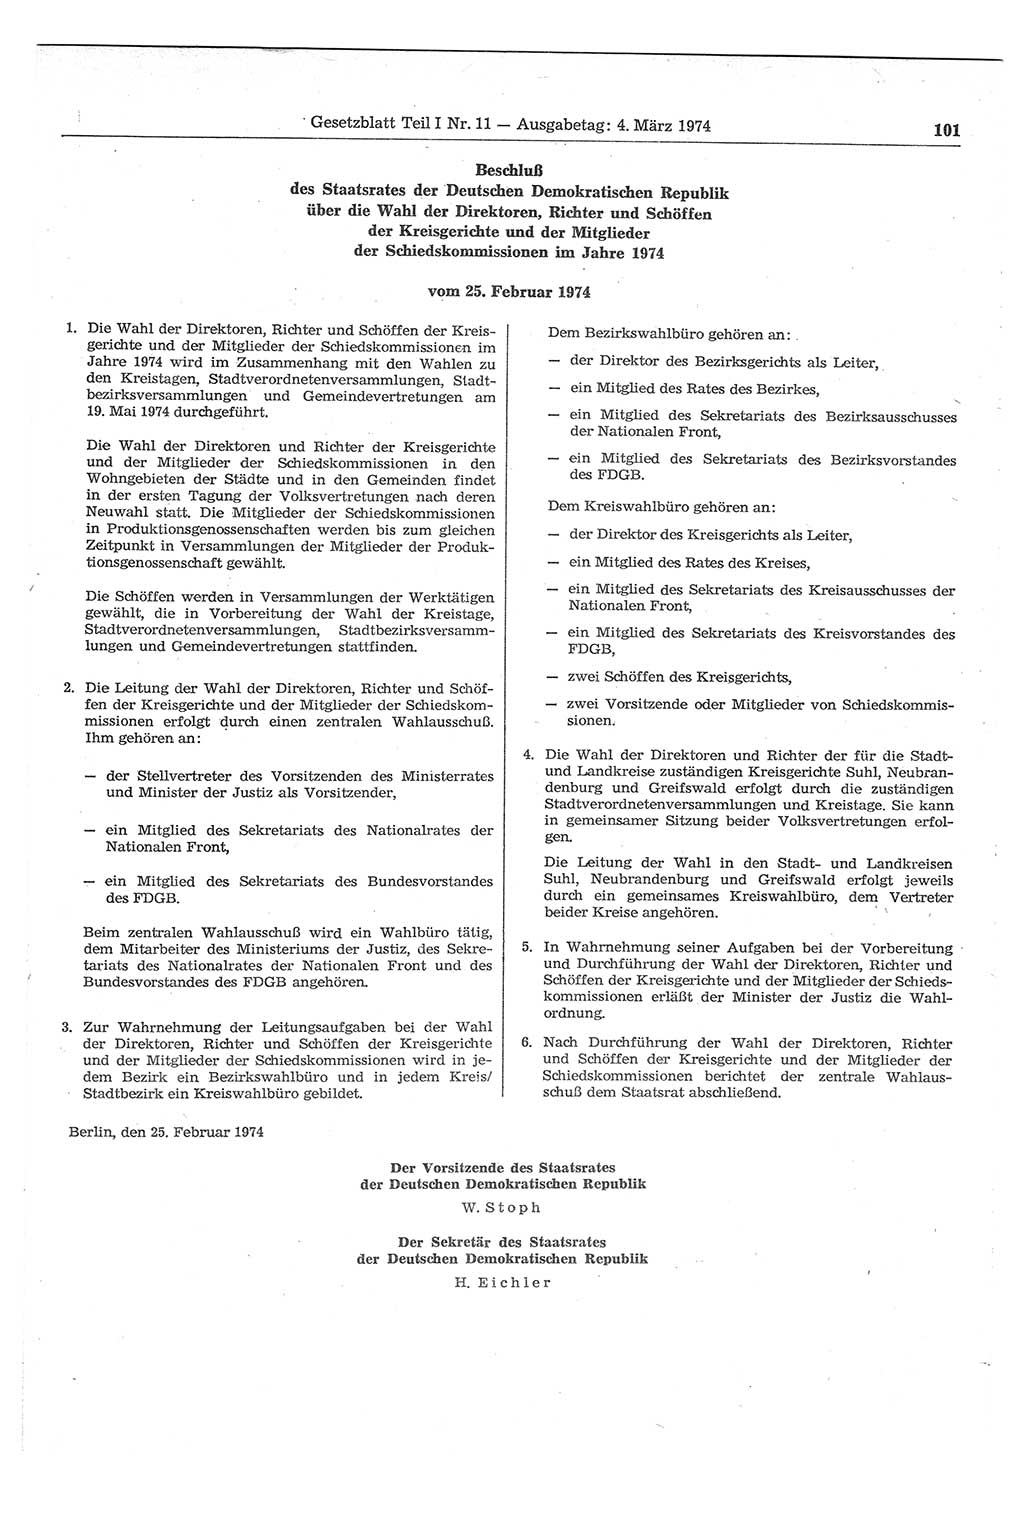 Gesetzblatt (GBl.) der Deutschen Demokratischen Republik (DDR) Teil Ⅰ 1974, Seite 101 (GBl. DDR Ⅰ 1974, S. 101)